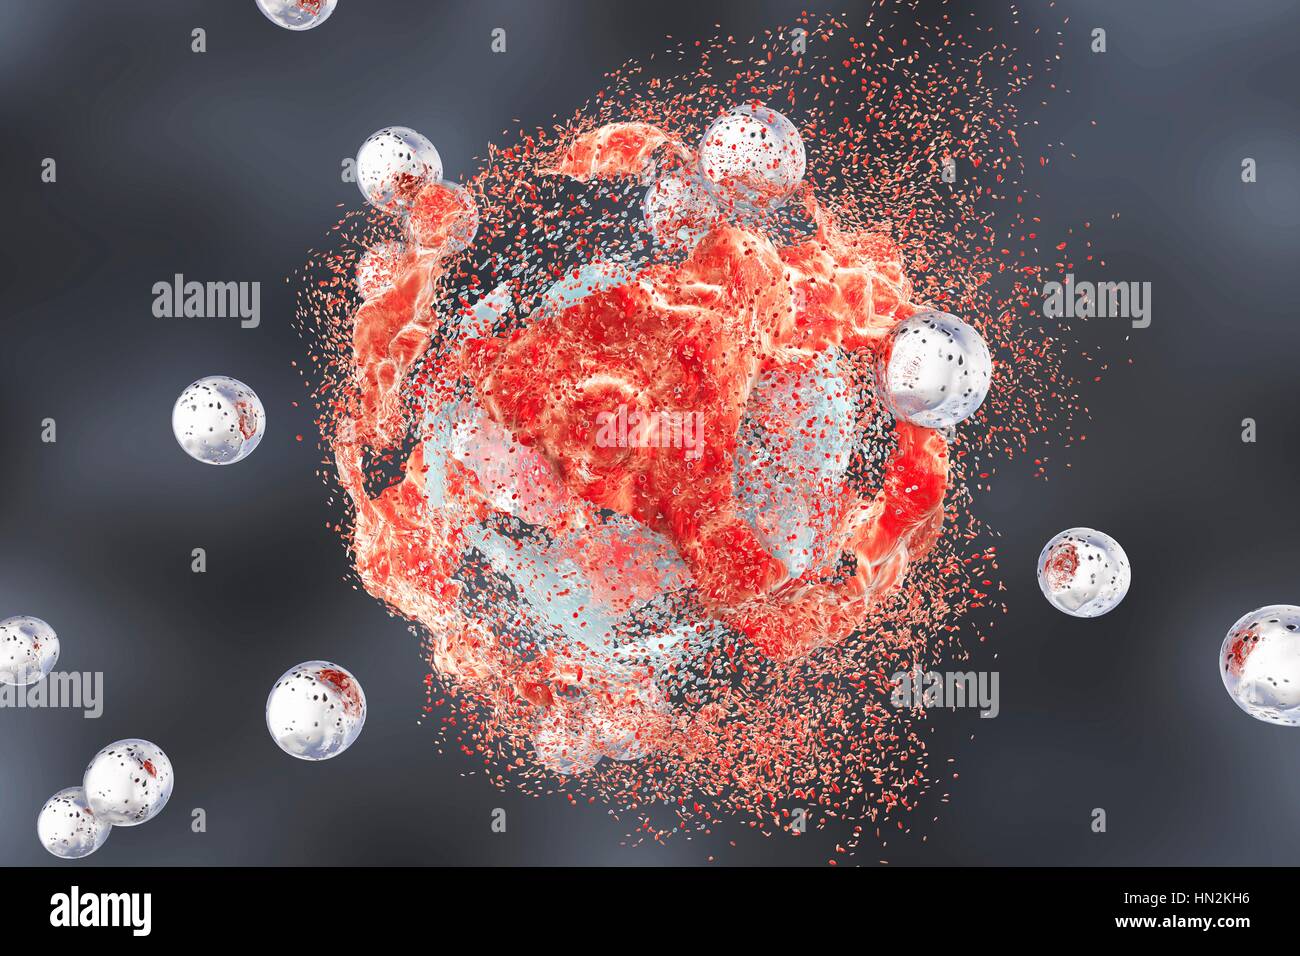 La destruction d'une cellule de cancer par des nanoparticules, illustration de l'ordinateur. Image conceptuelle qui illustre le potentiel des nanoparticules dans le traitement du cancer. Banque D'Images